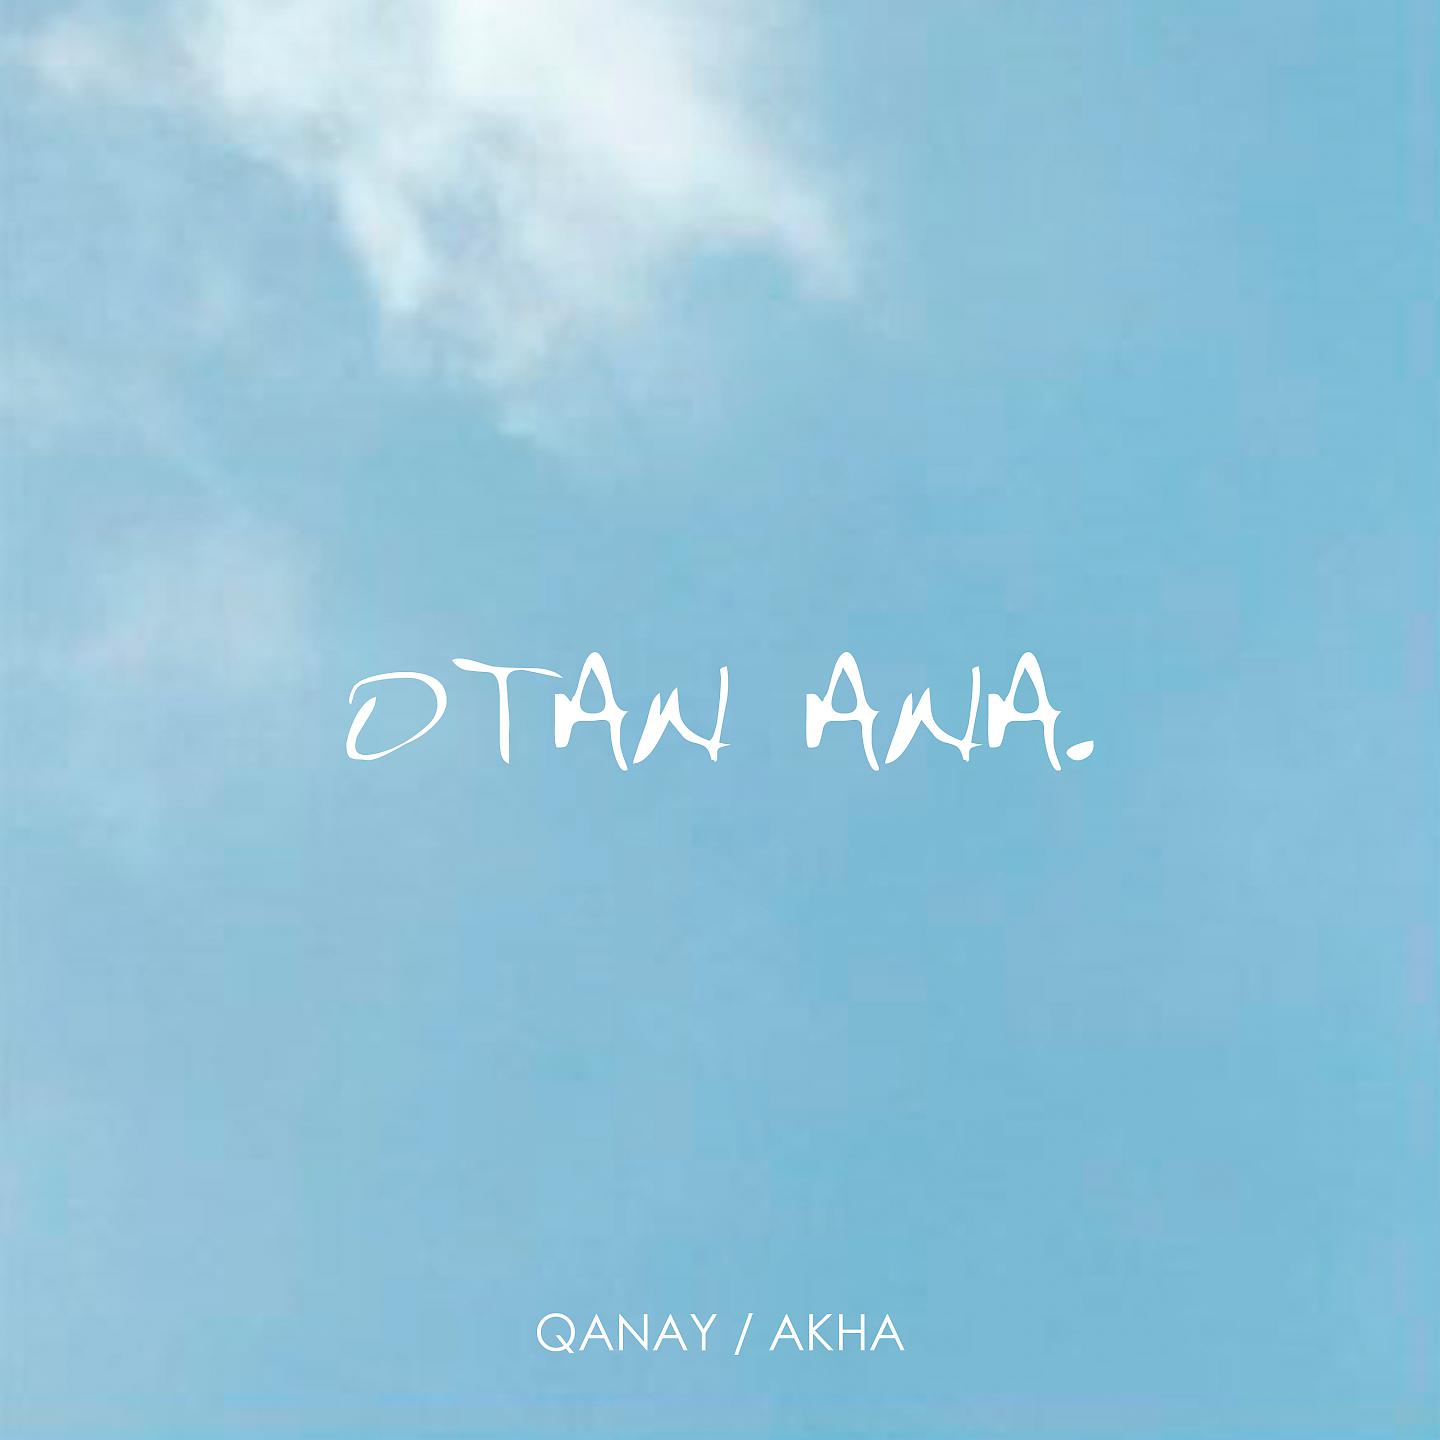 Qanay, Akha - Otan Ana